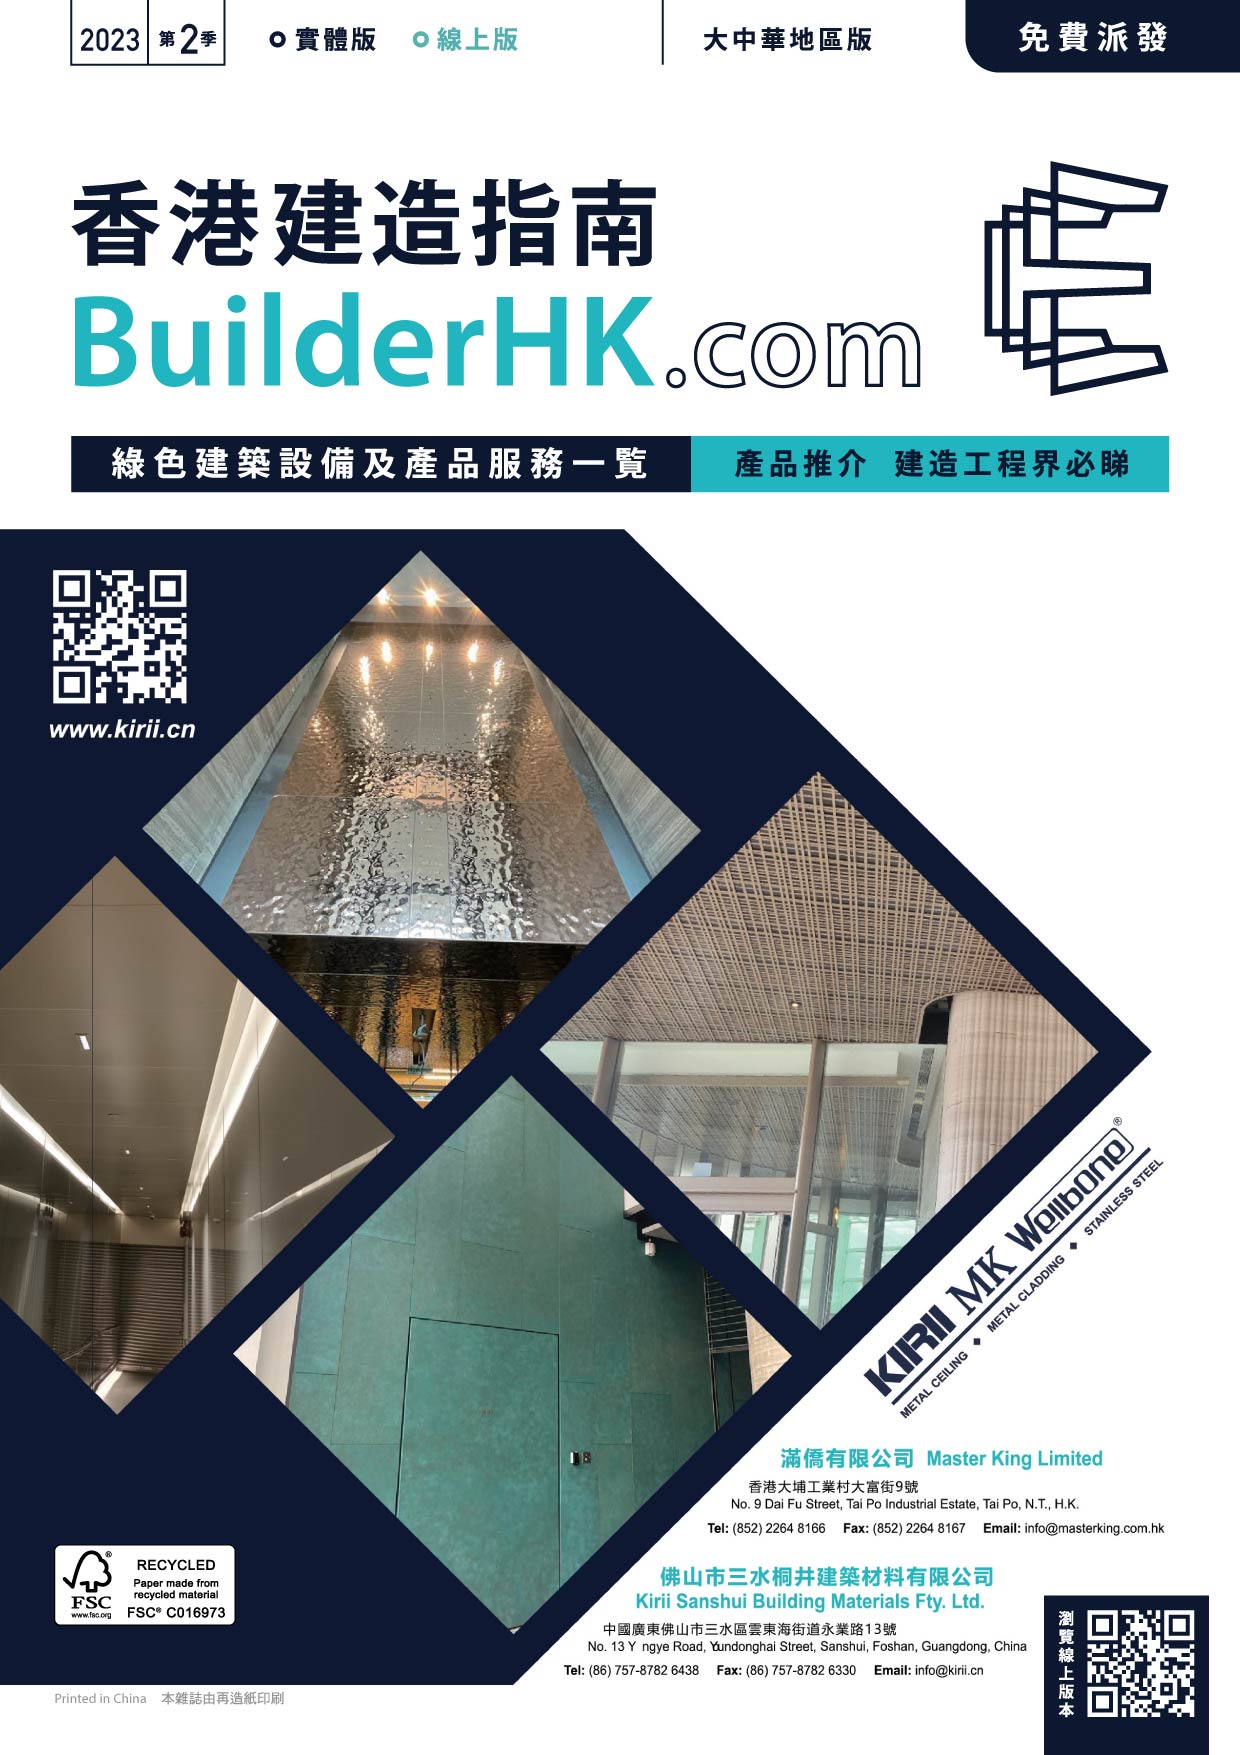 BuilderHK Booklet 2023 Green Building